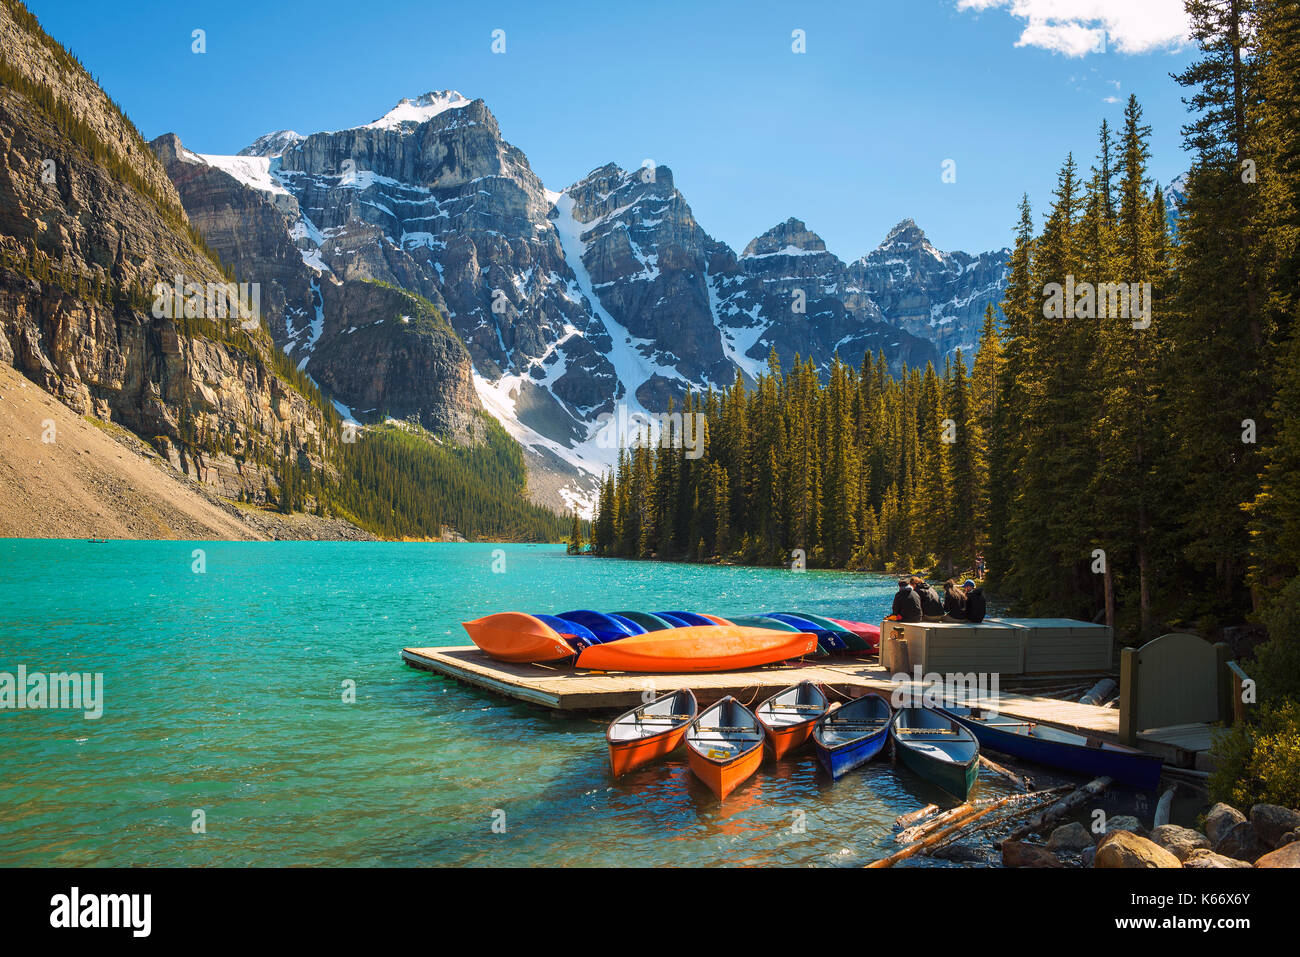 Canoas en un embarcadero en el lago Moraine, en el Parque Nacional Banff, Alberta, Canadá, con picos nevados de las montañas rocosas canadienses en el fondo. Foto de stock